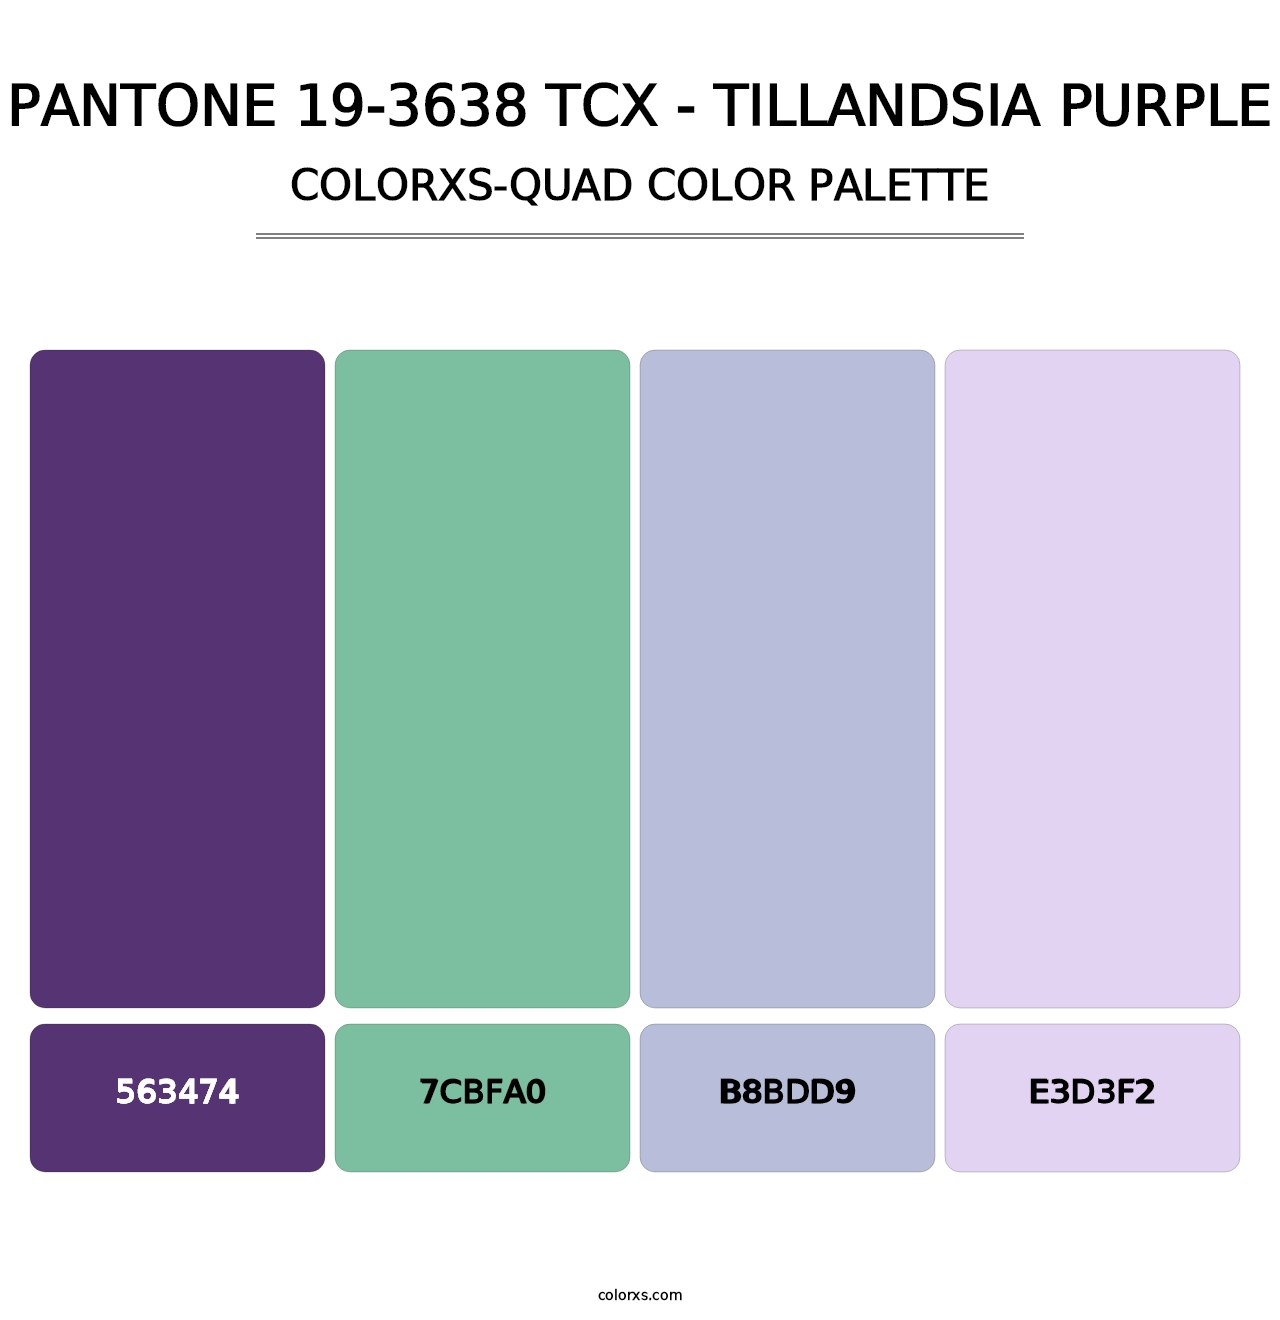 PANTONE 19-3638 TCX - Tillandsia Purple - Colorxs Quad Palette